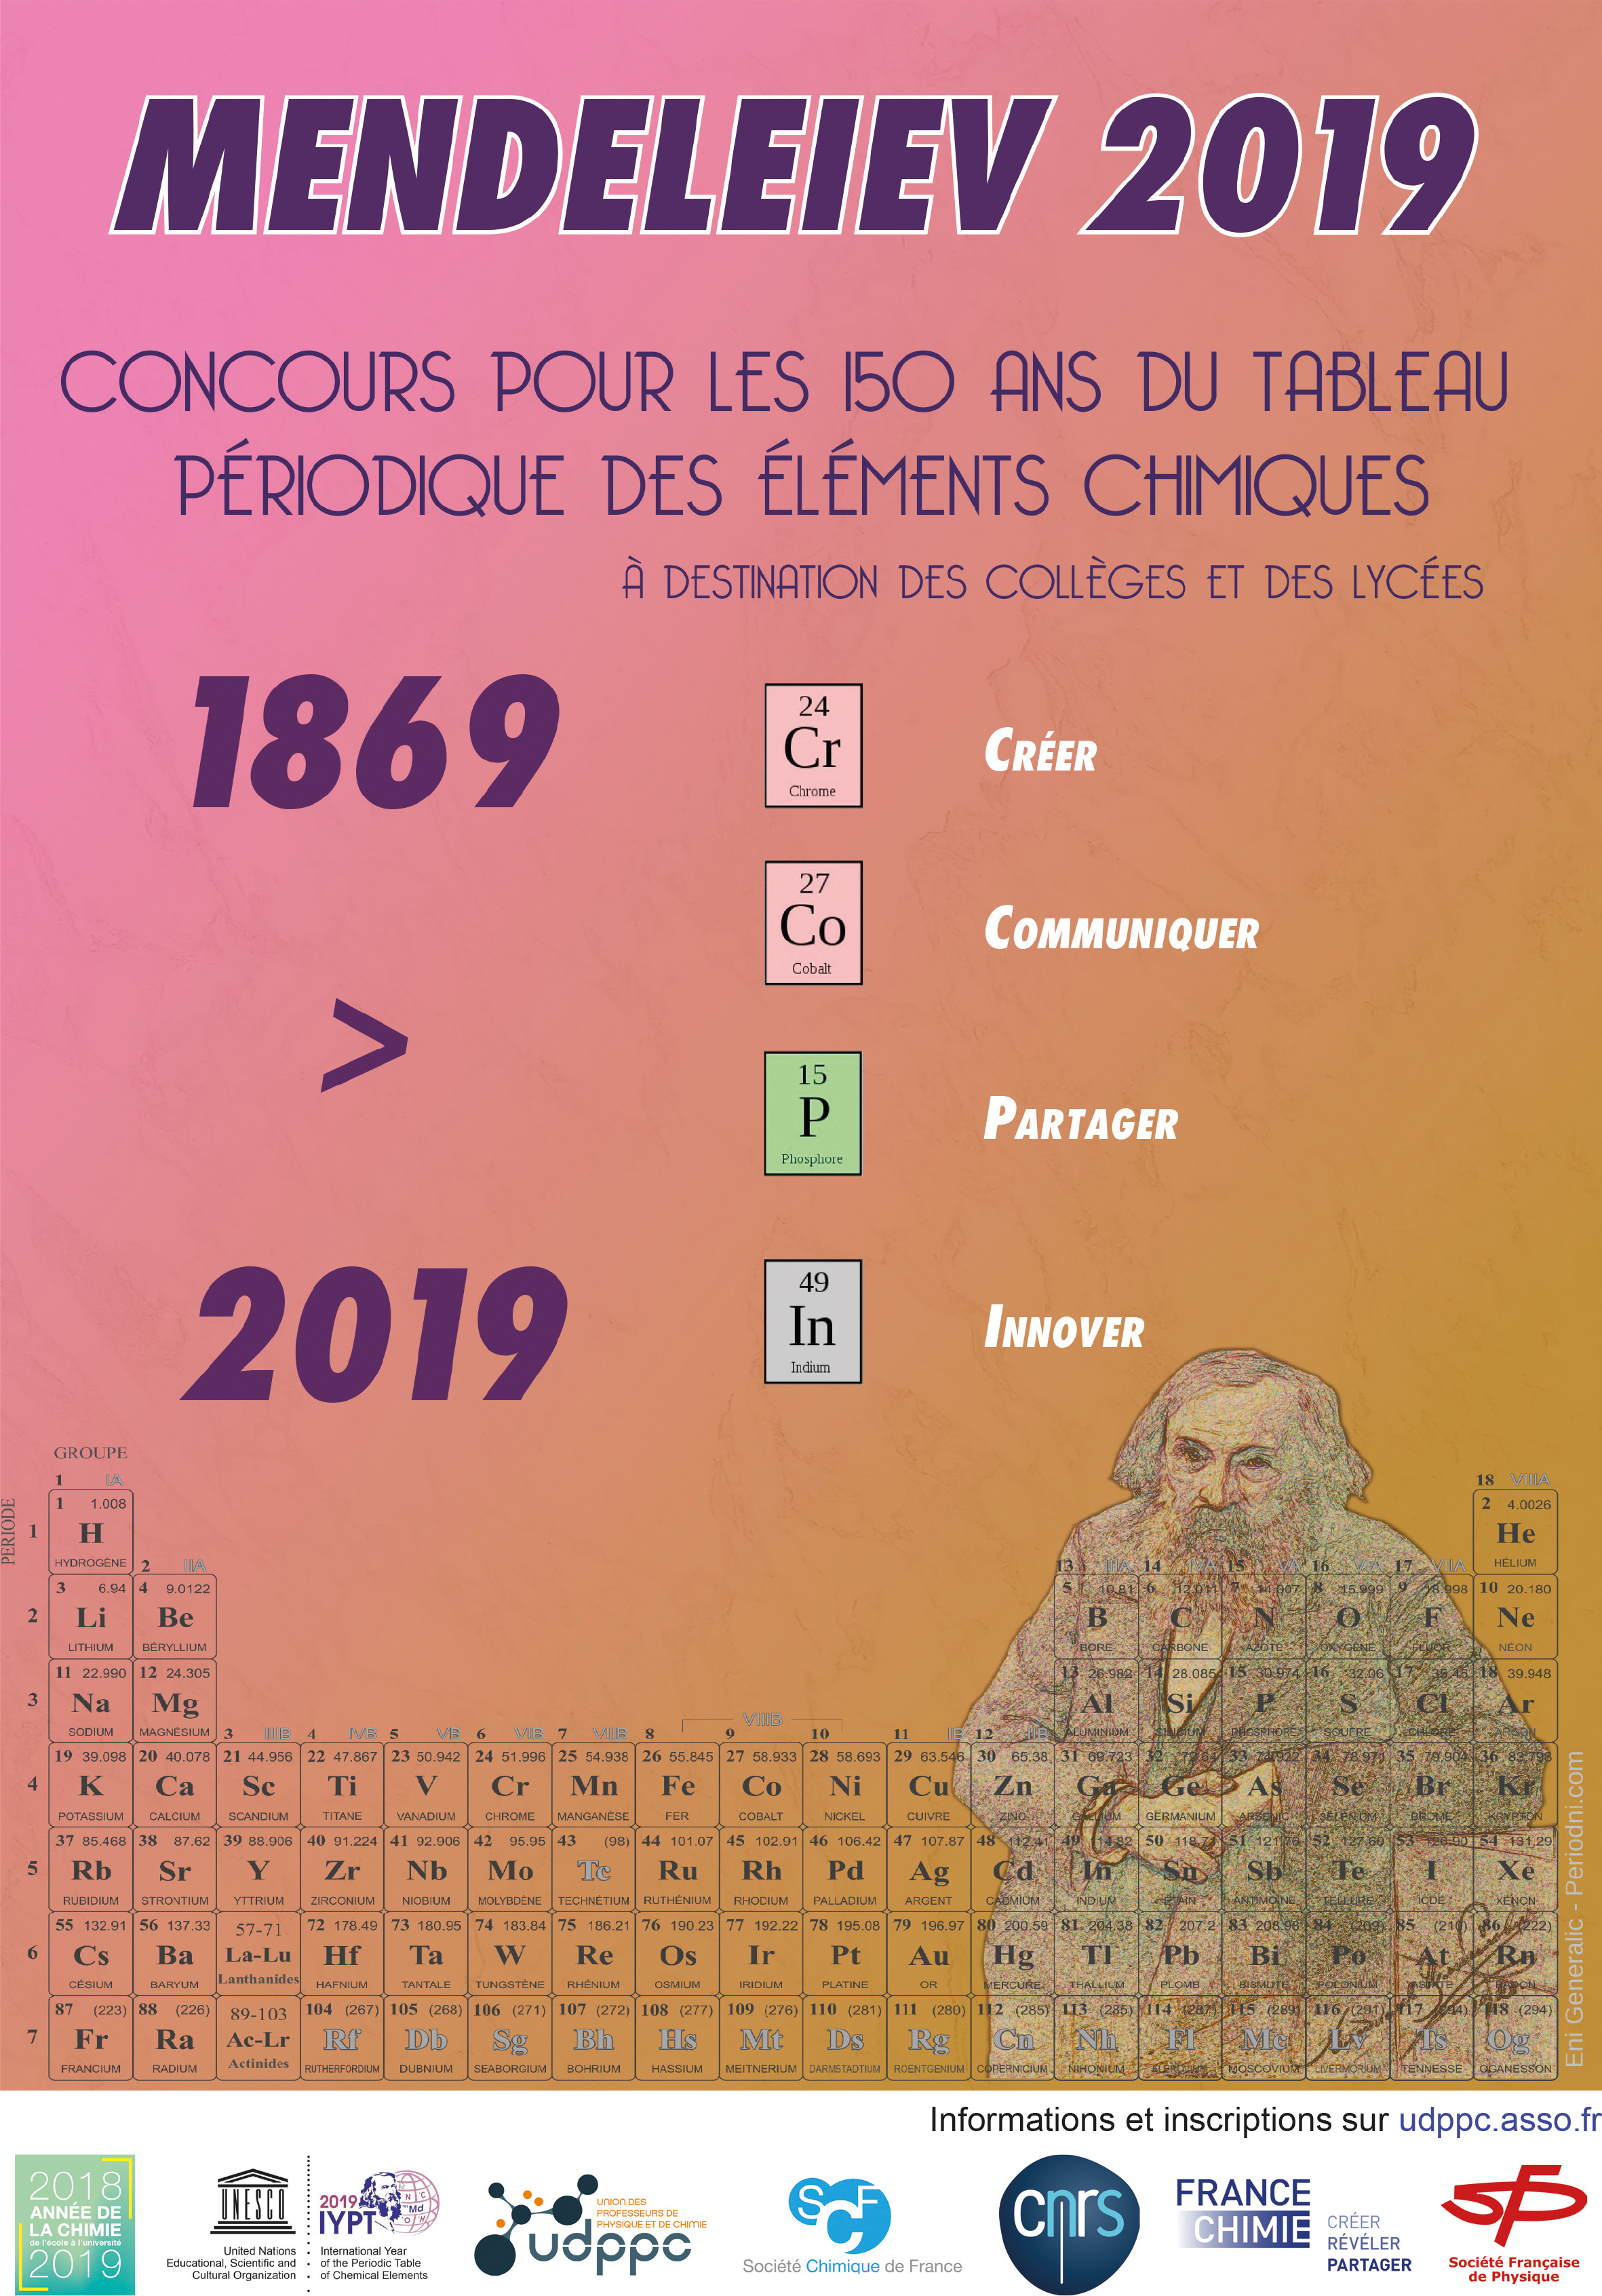 Concours Mendeleïev 2019 – Inscription jusqu’au 21 décembre